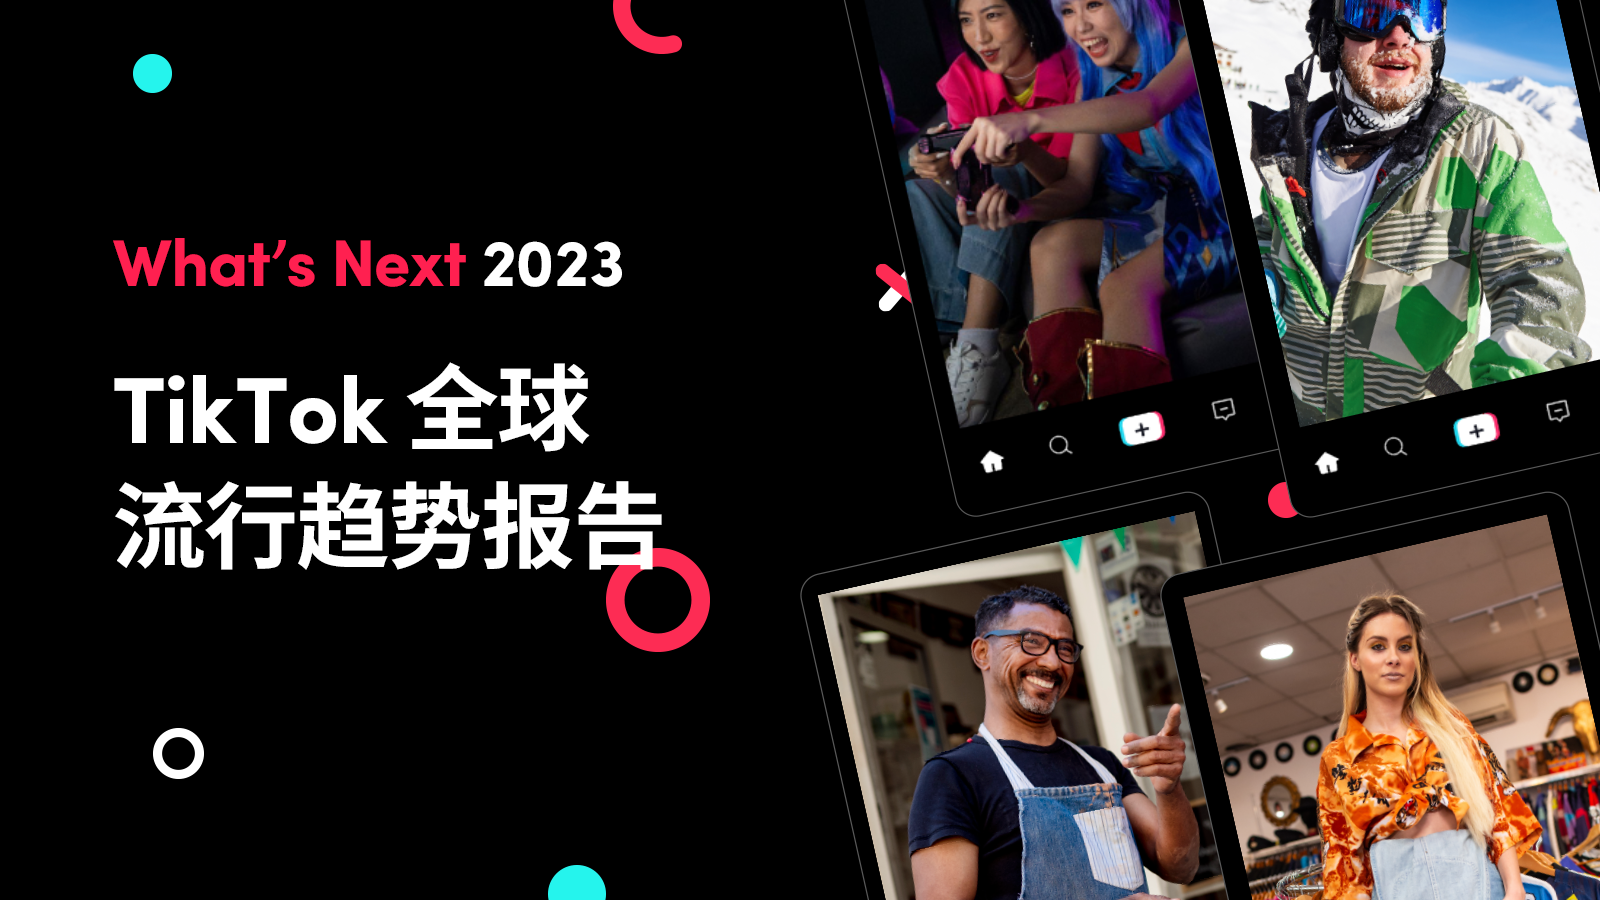 TikTok《 What's Next 2023》发布，洞察全球营销新趋势